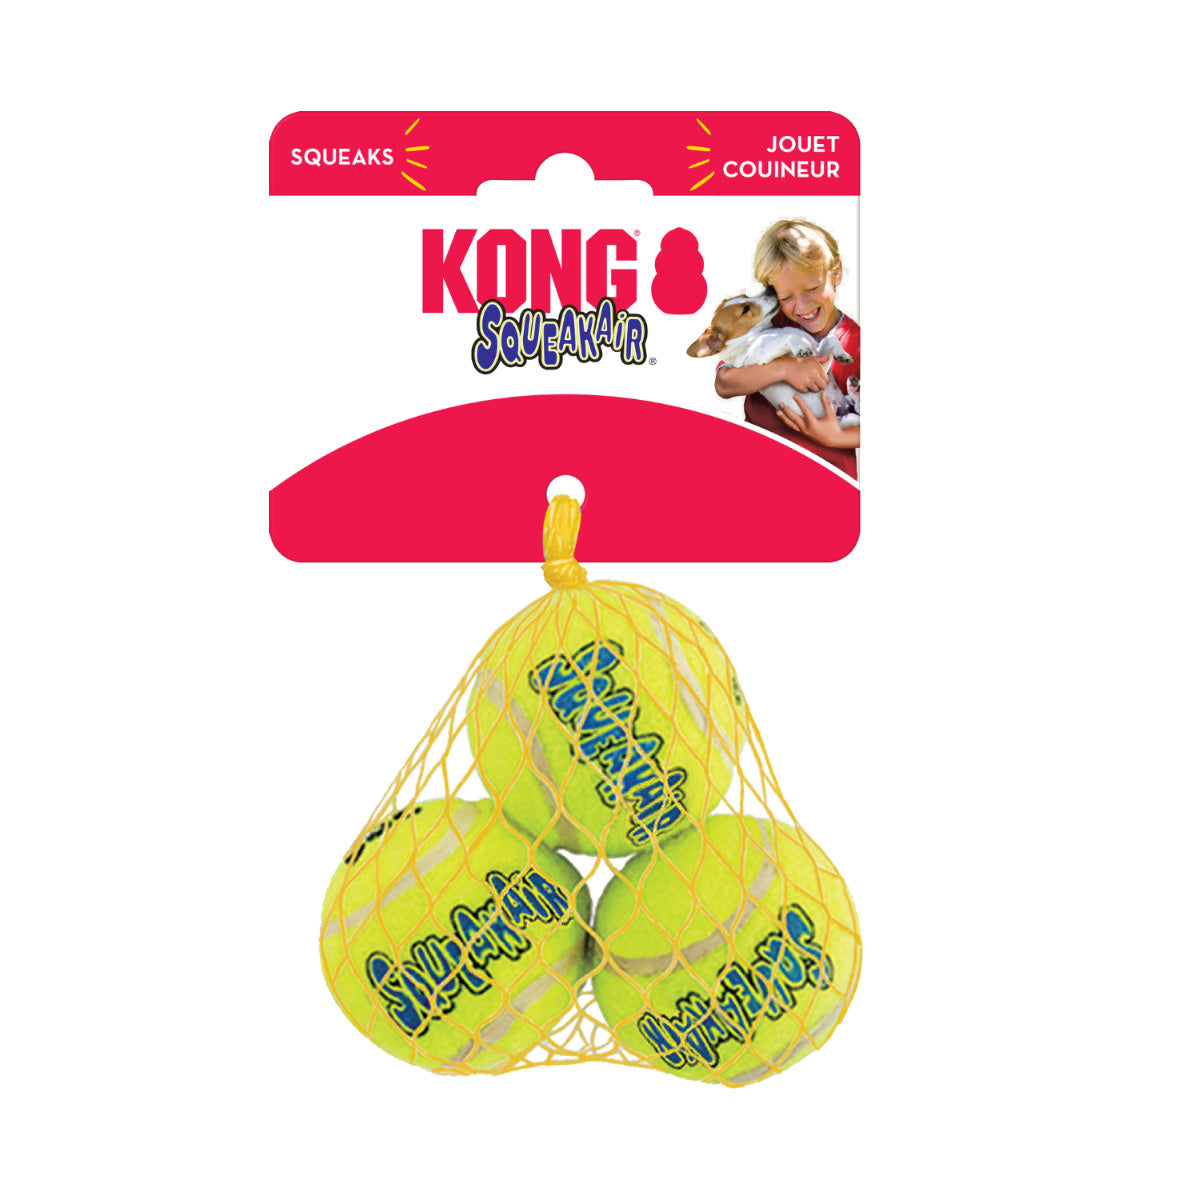 Pelota de Tennis para perro Air Dog Kong con 3 piezas